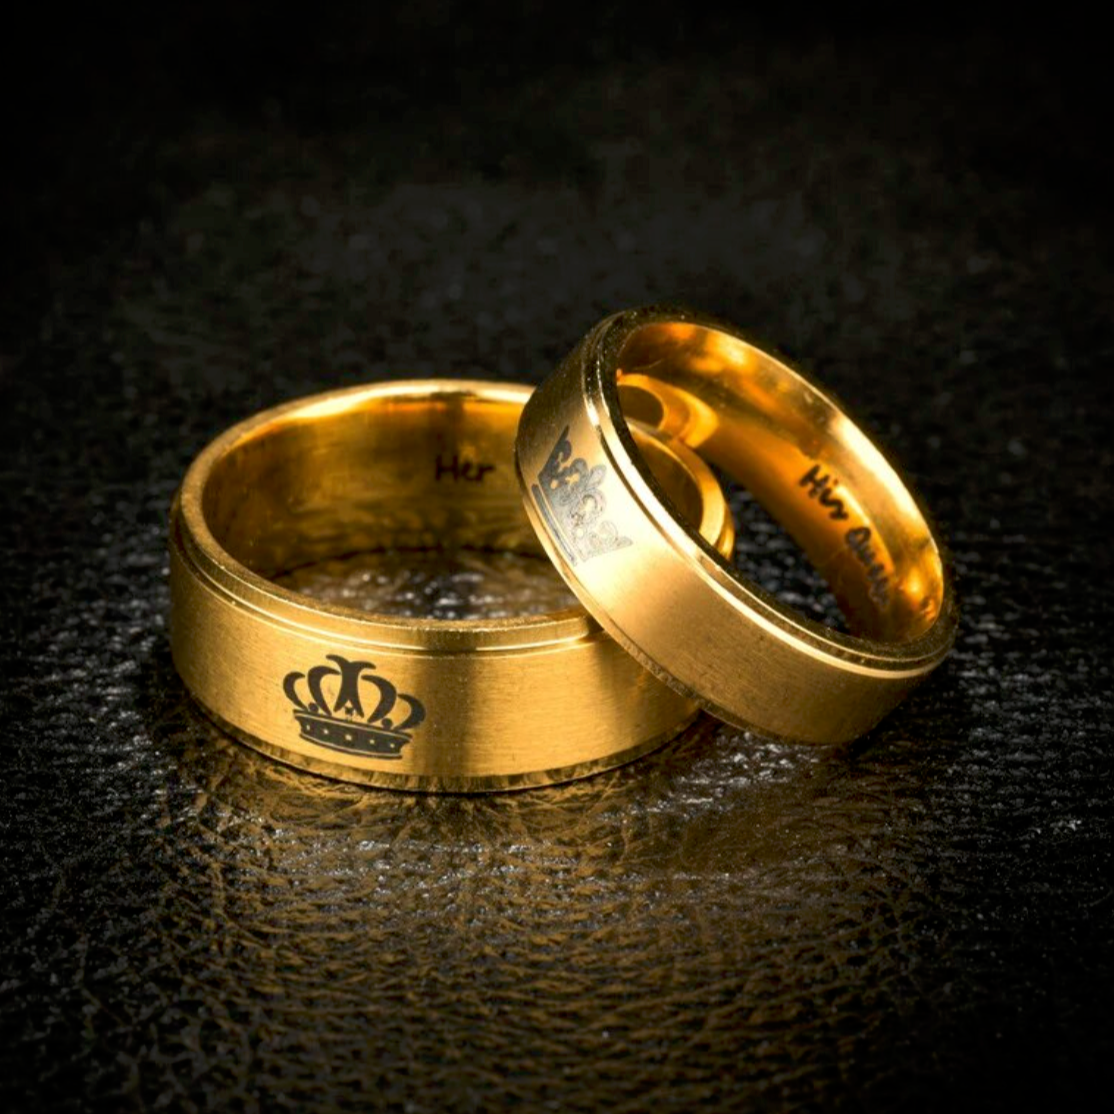 Bague anneau acier doré gravure couronne royale. Détails produit : Couleur or. Acier doré. Gravure de couronne.  La couronne est un symbole classique de royauté et de pouvoir, mais dans ce contexte, elle représente l'amour et l'affection que vous portez à la personne qui la porte.